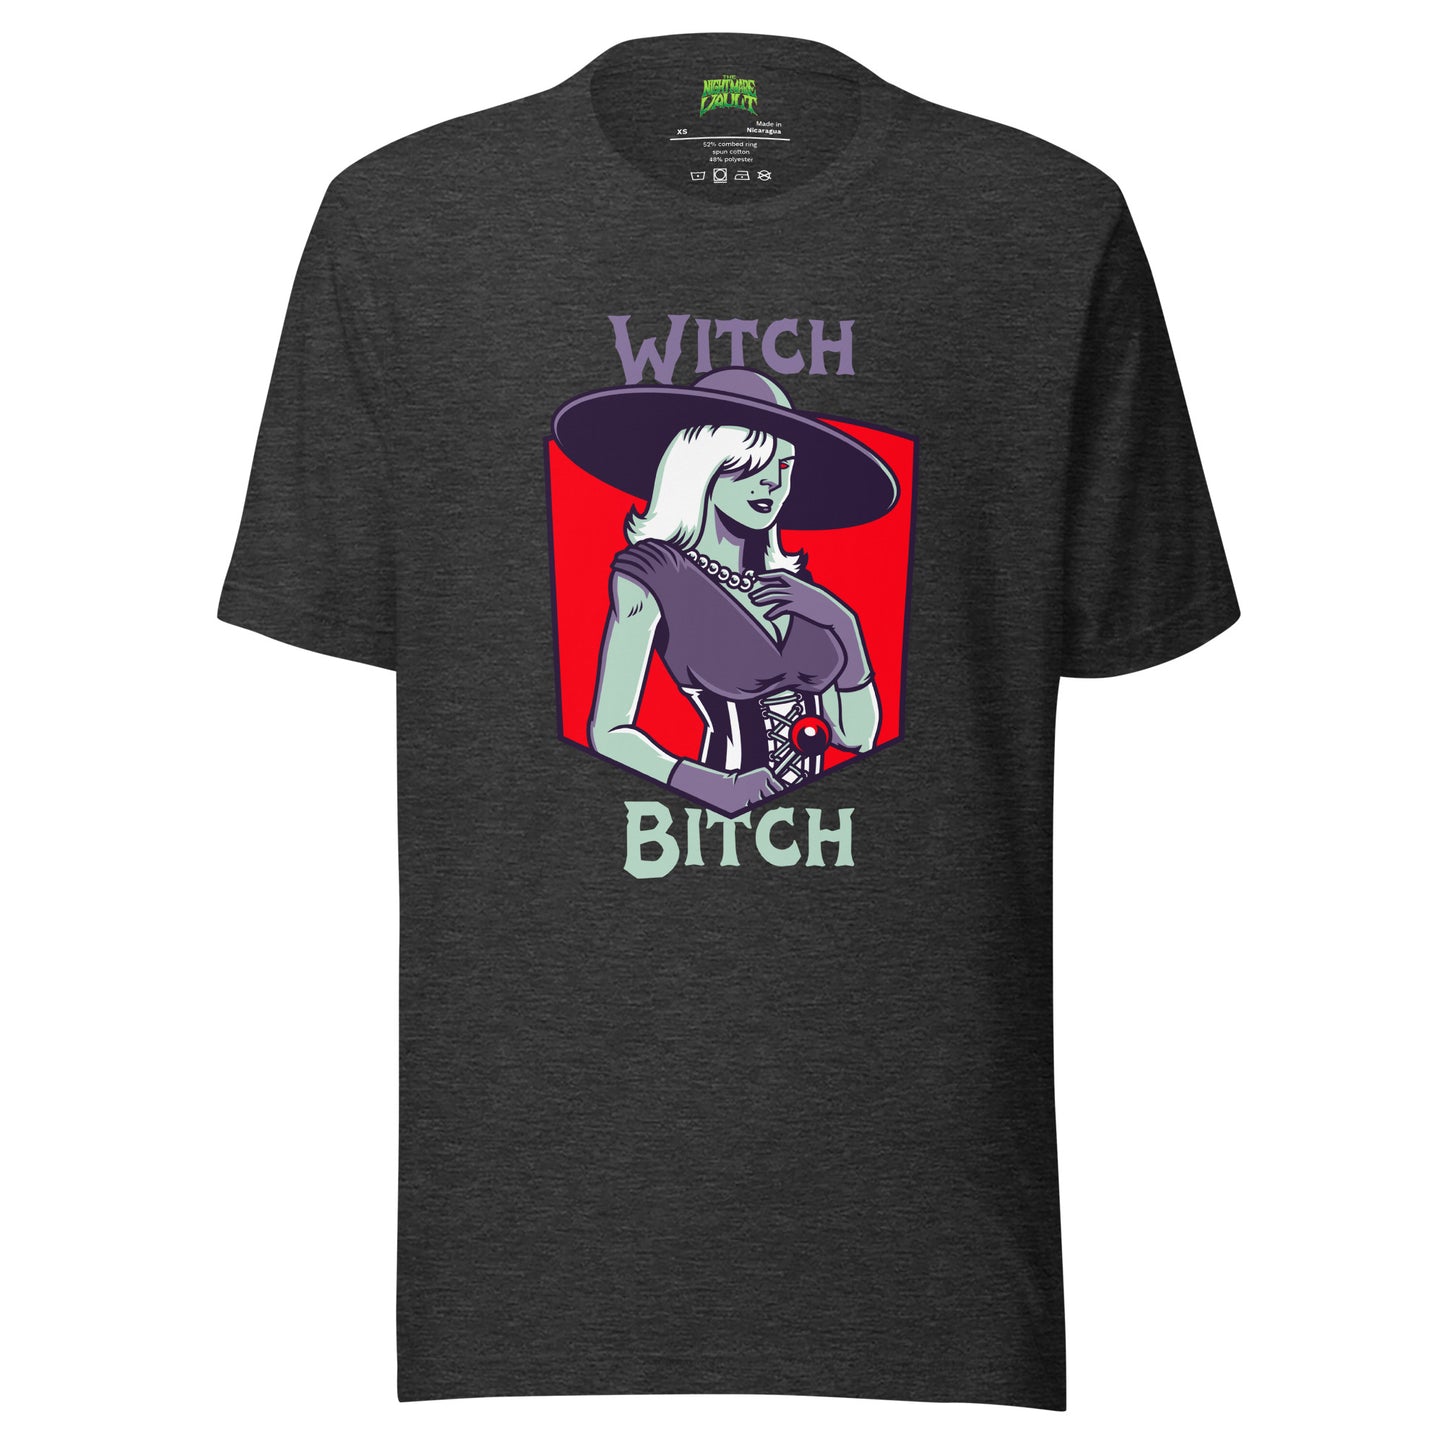 Witch Bitch tee